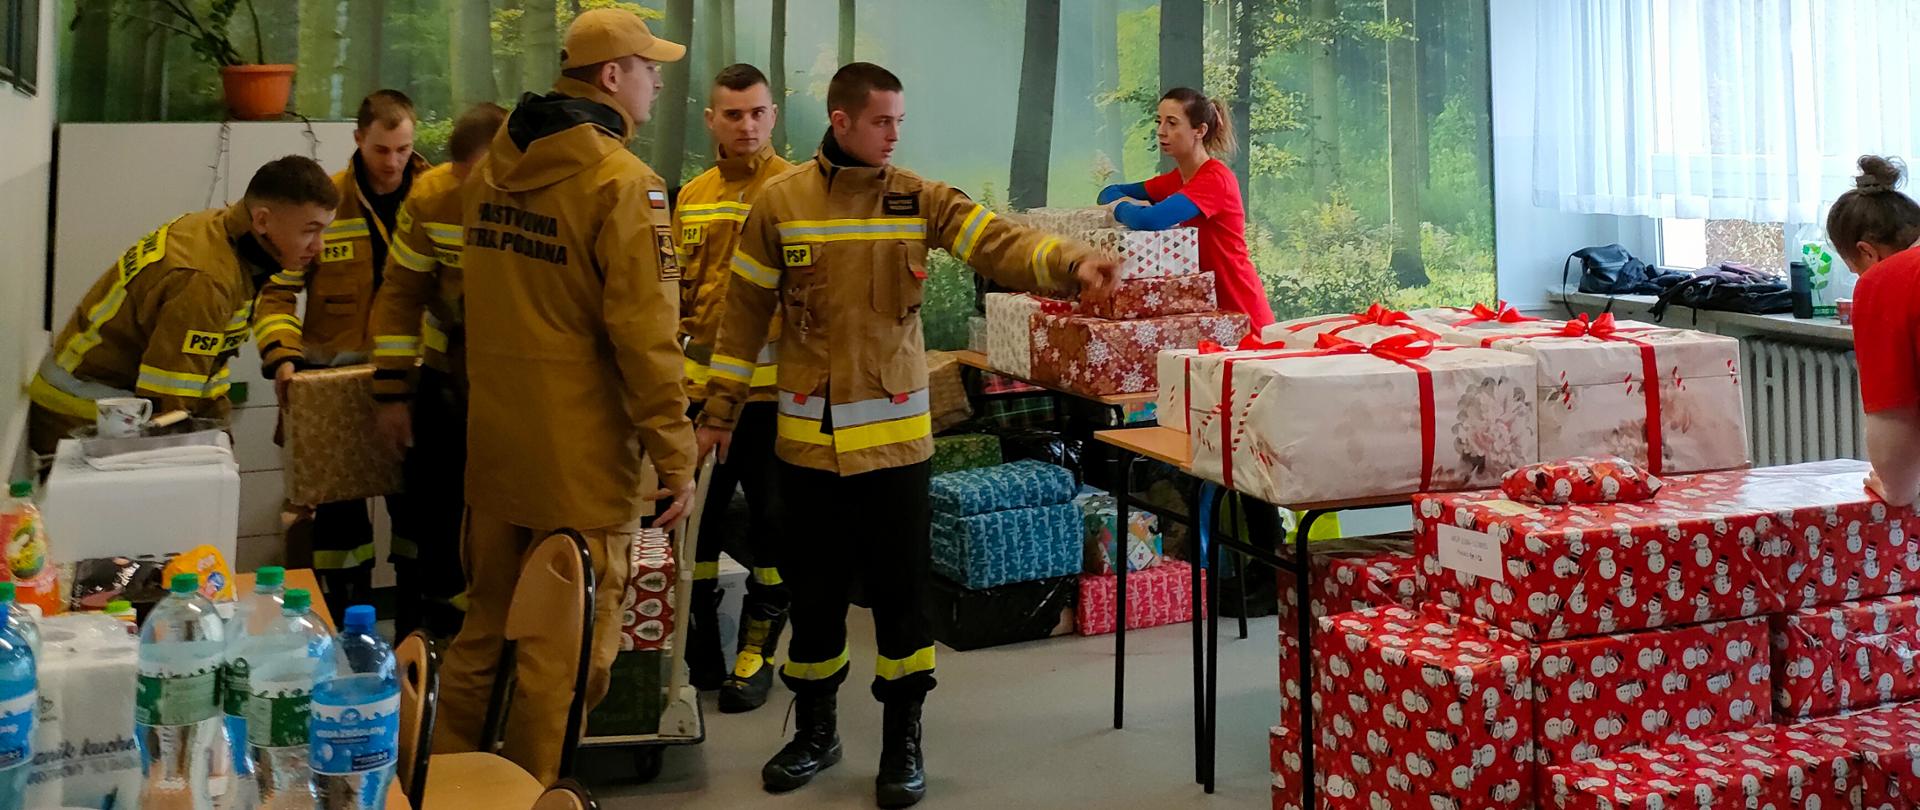 Sześciu strażaków i wolontariusze w siedzibie akcji Szlachetna Paczka sortują paczki, które będą dostarczane do osób potrzebujących